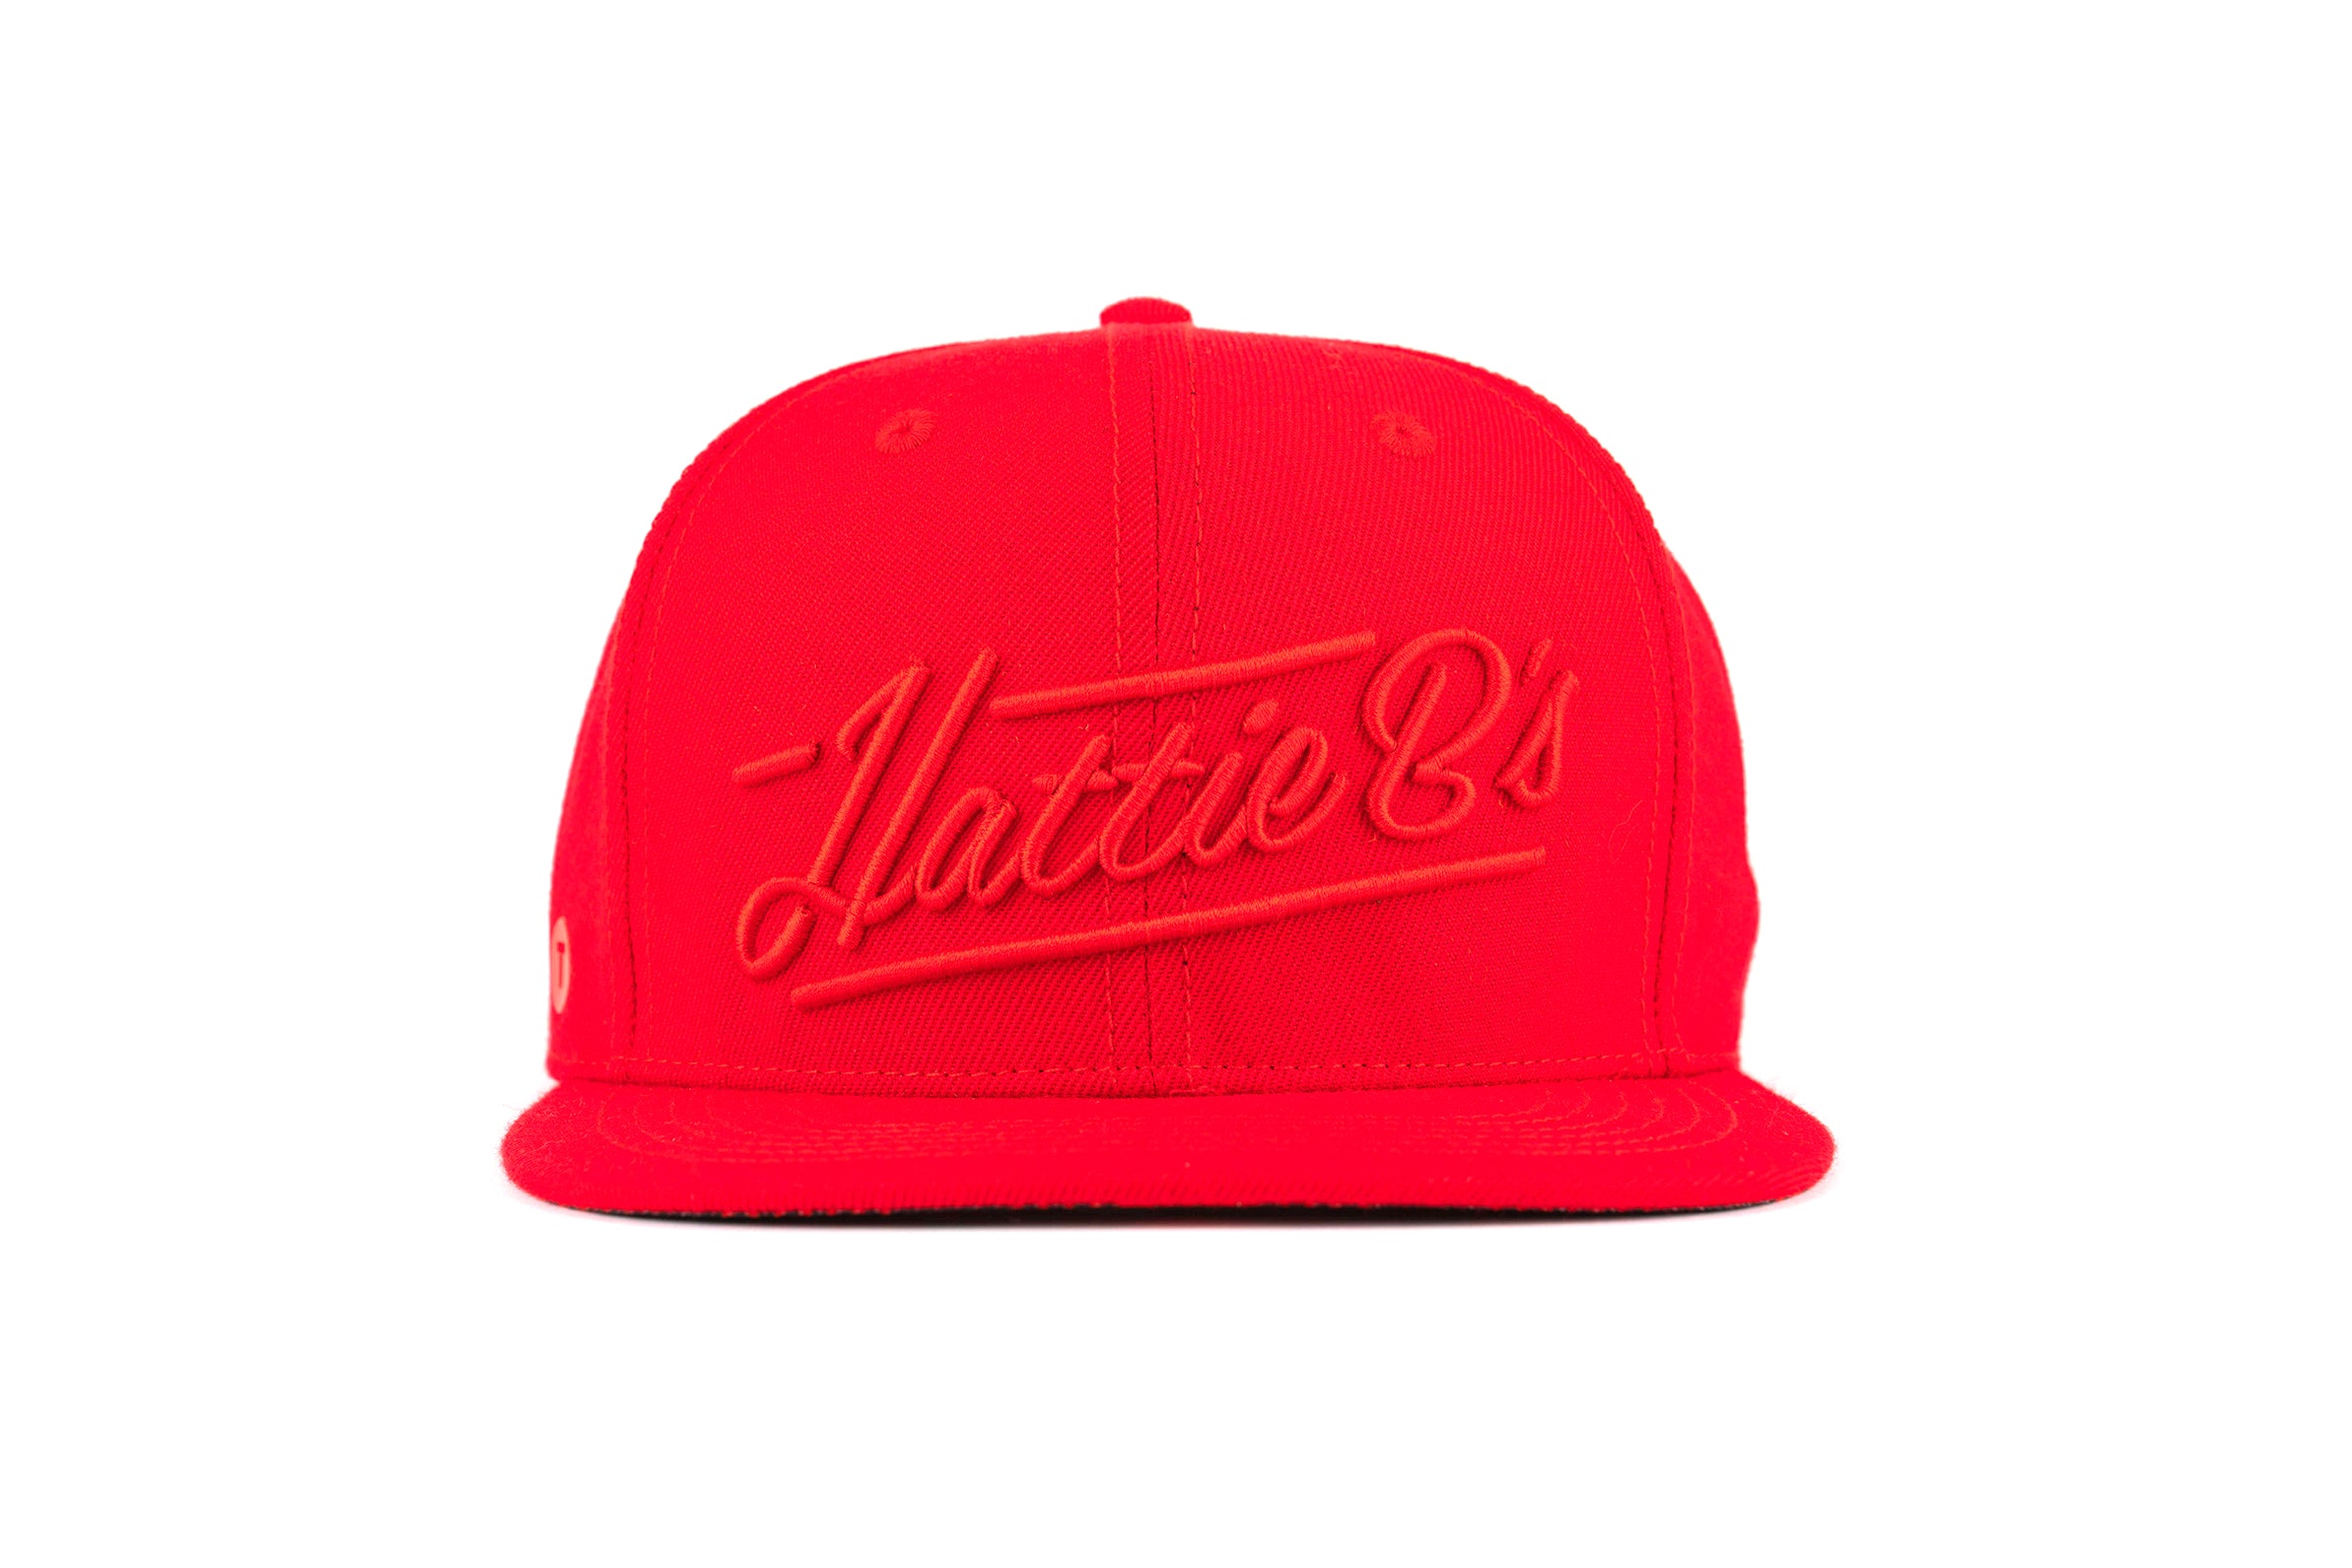 Hattie B's Red on Red Flatbill Hat – Hattie B's Online Shop